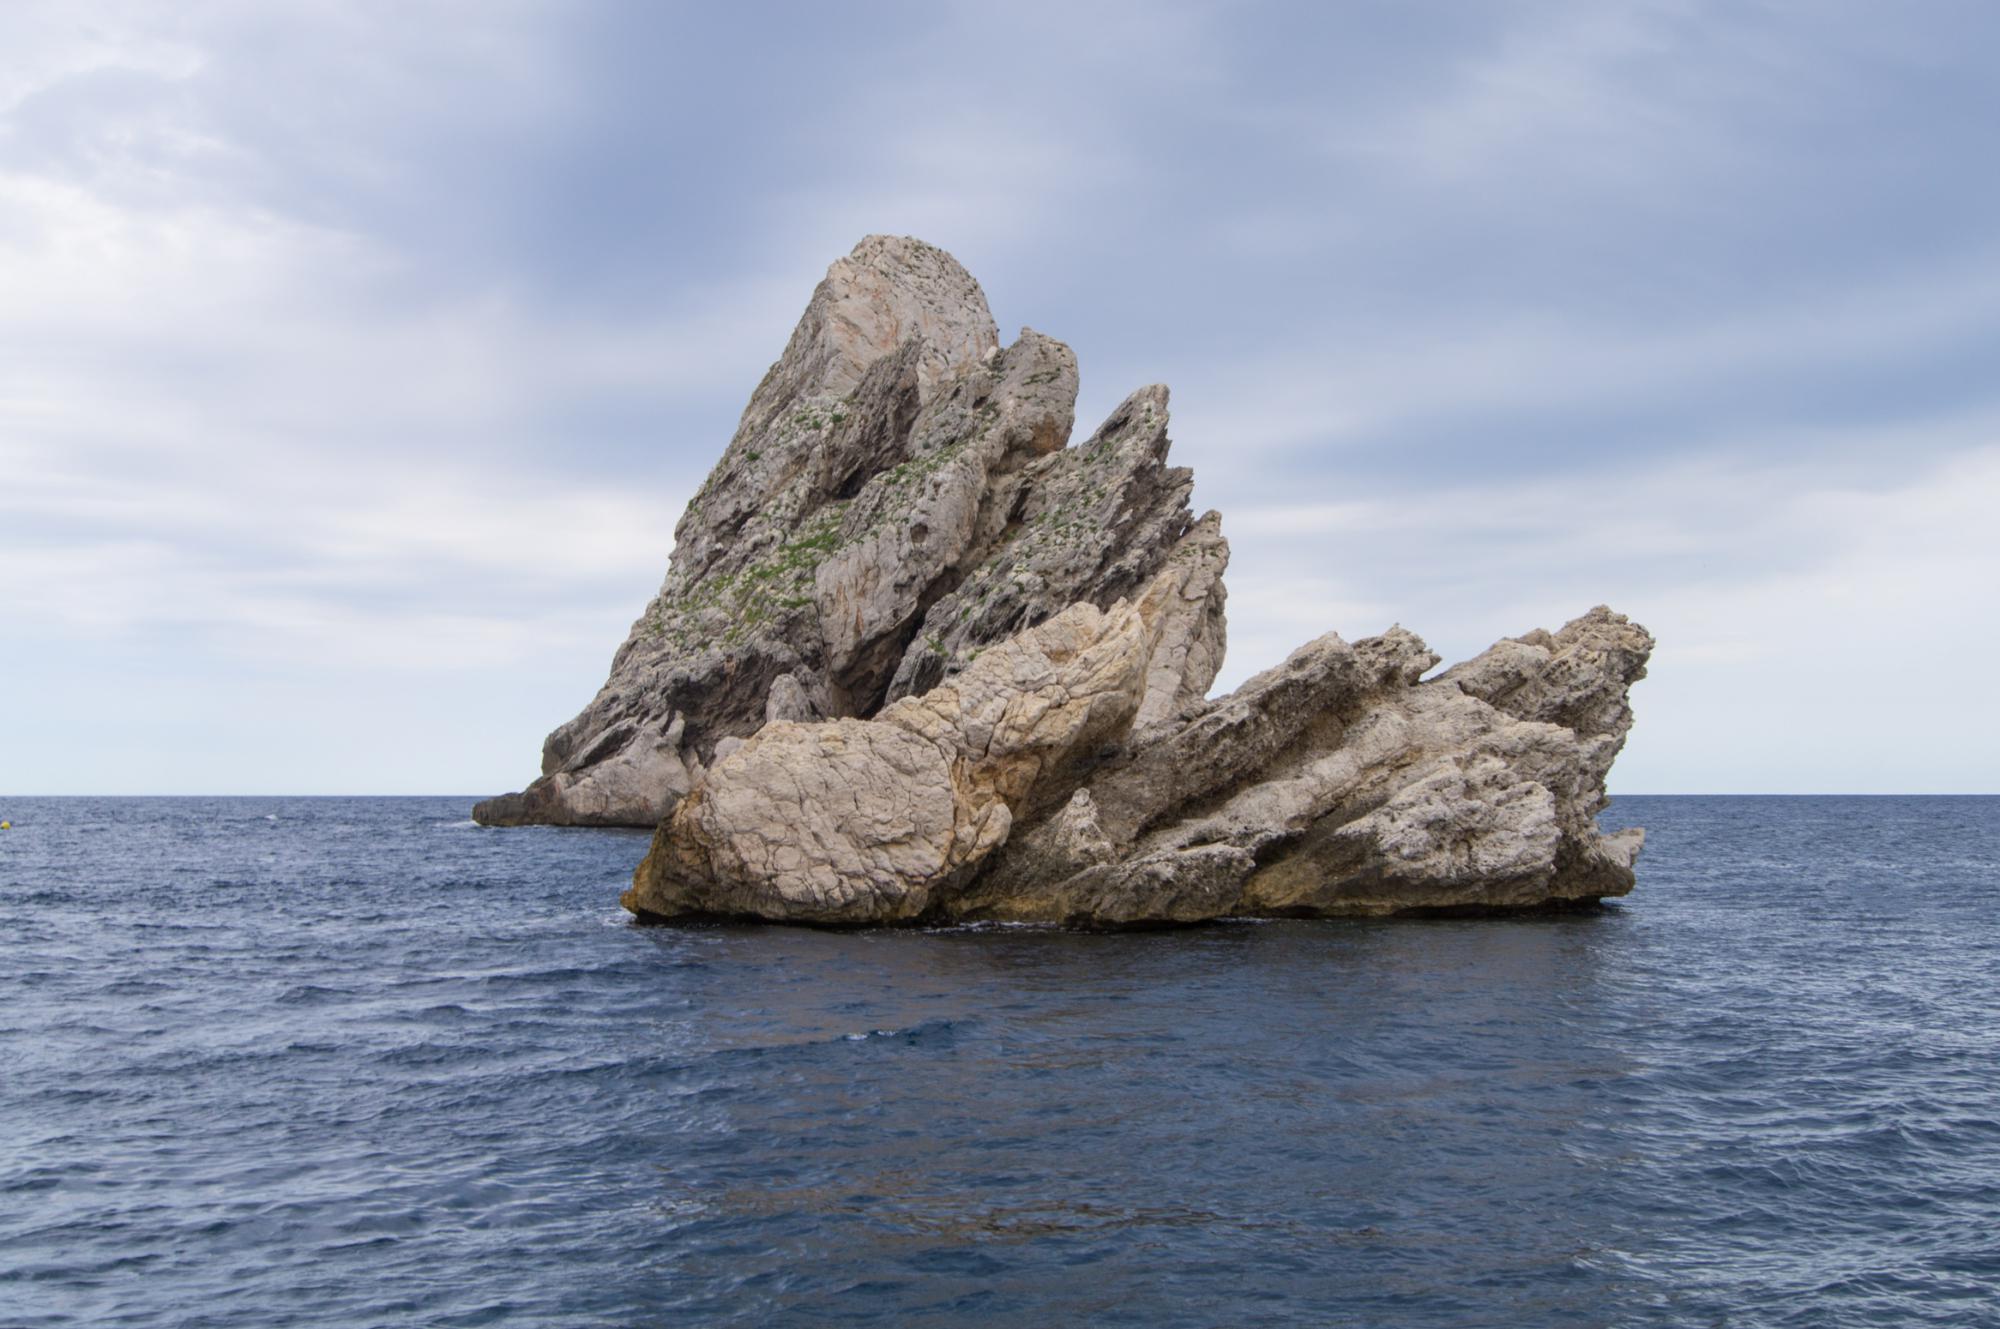 Rocks in the Mediterranean Sea near the town of Estartit, located on the Costa Brava